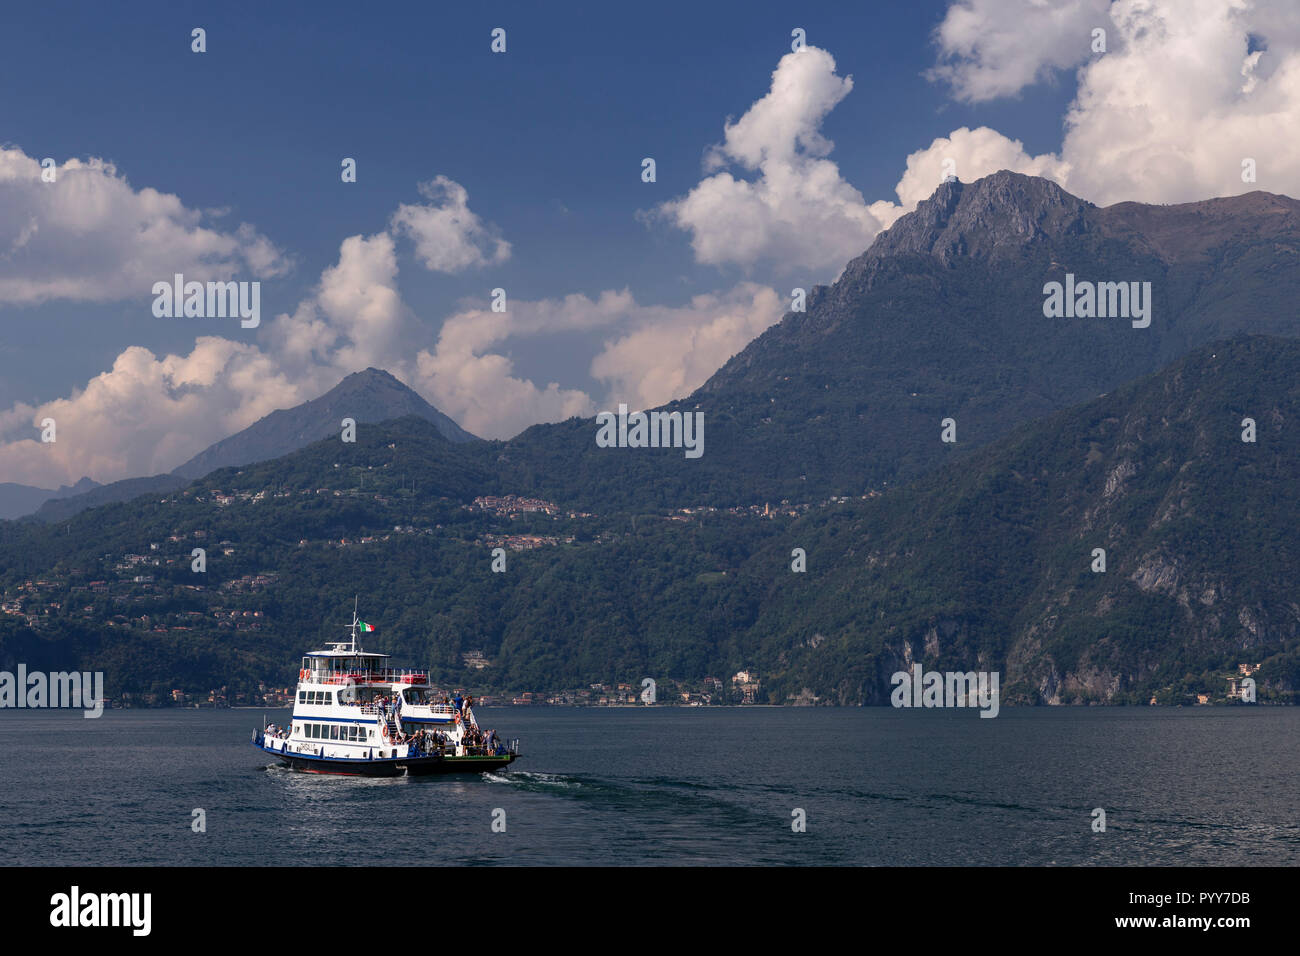 Le port de ferry sur le lac de Côme Varenna, Italie Banque D'Images